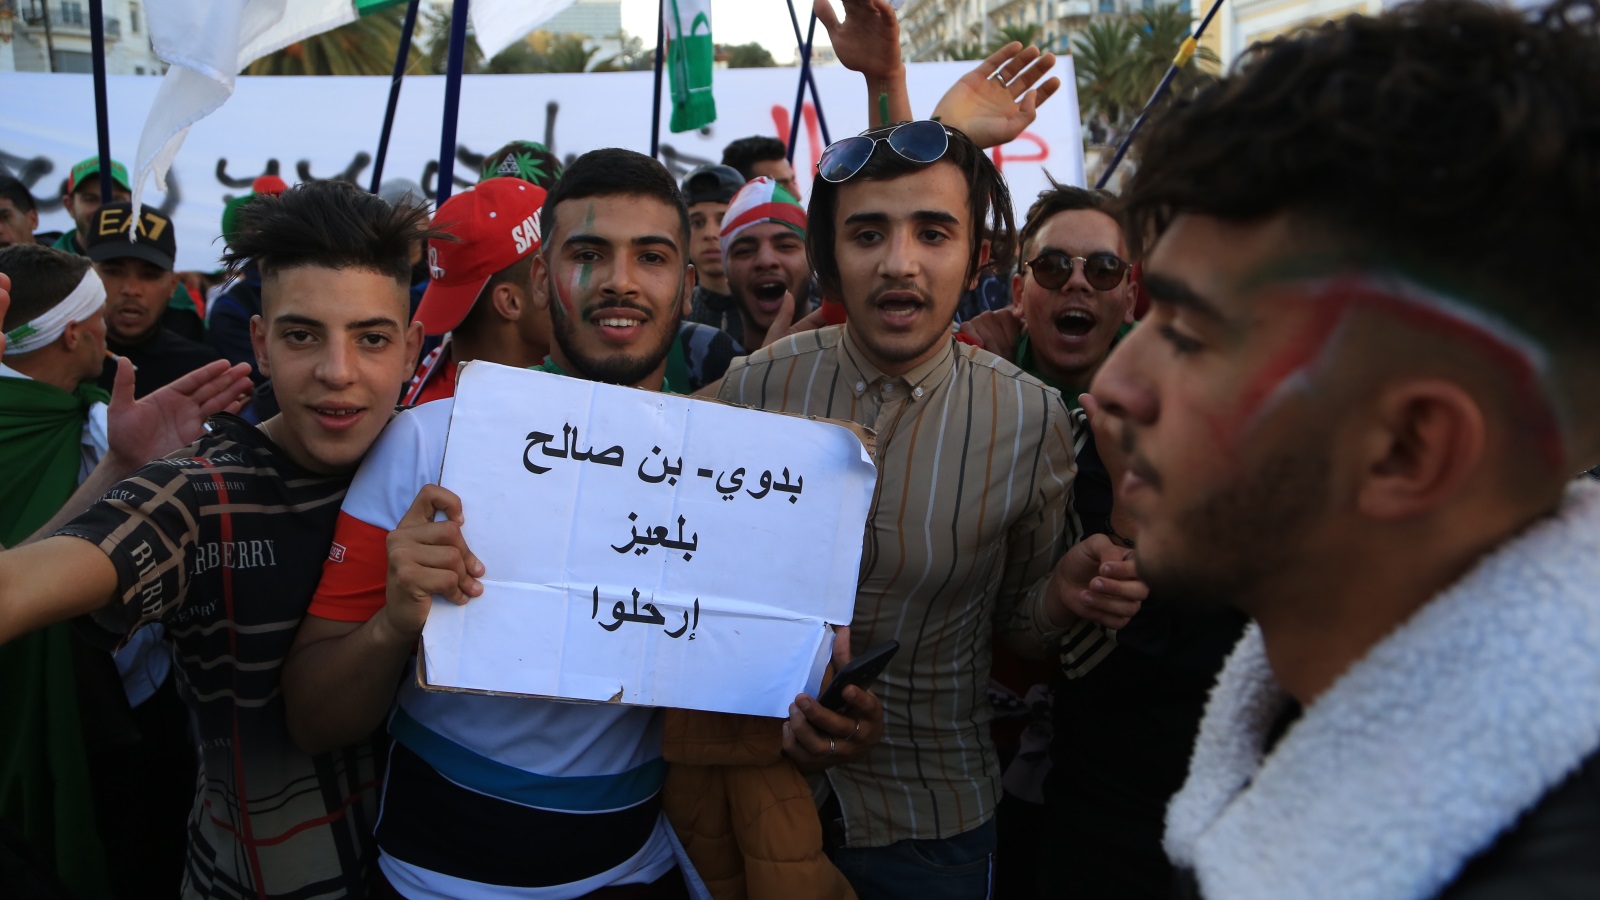 ‪الشباب الجزائريون شاركوا بكثافة في الحراك‬  (الأناضول)